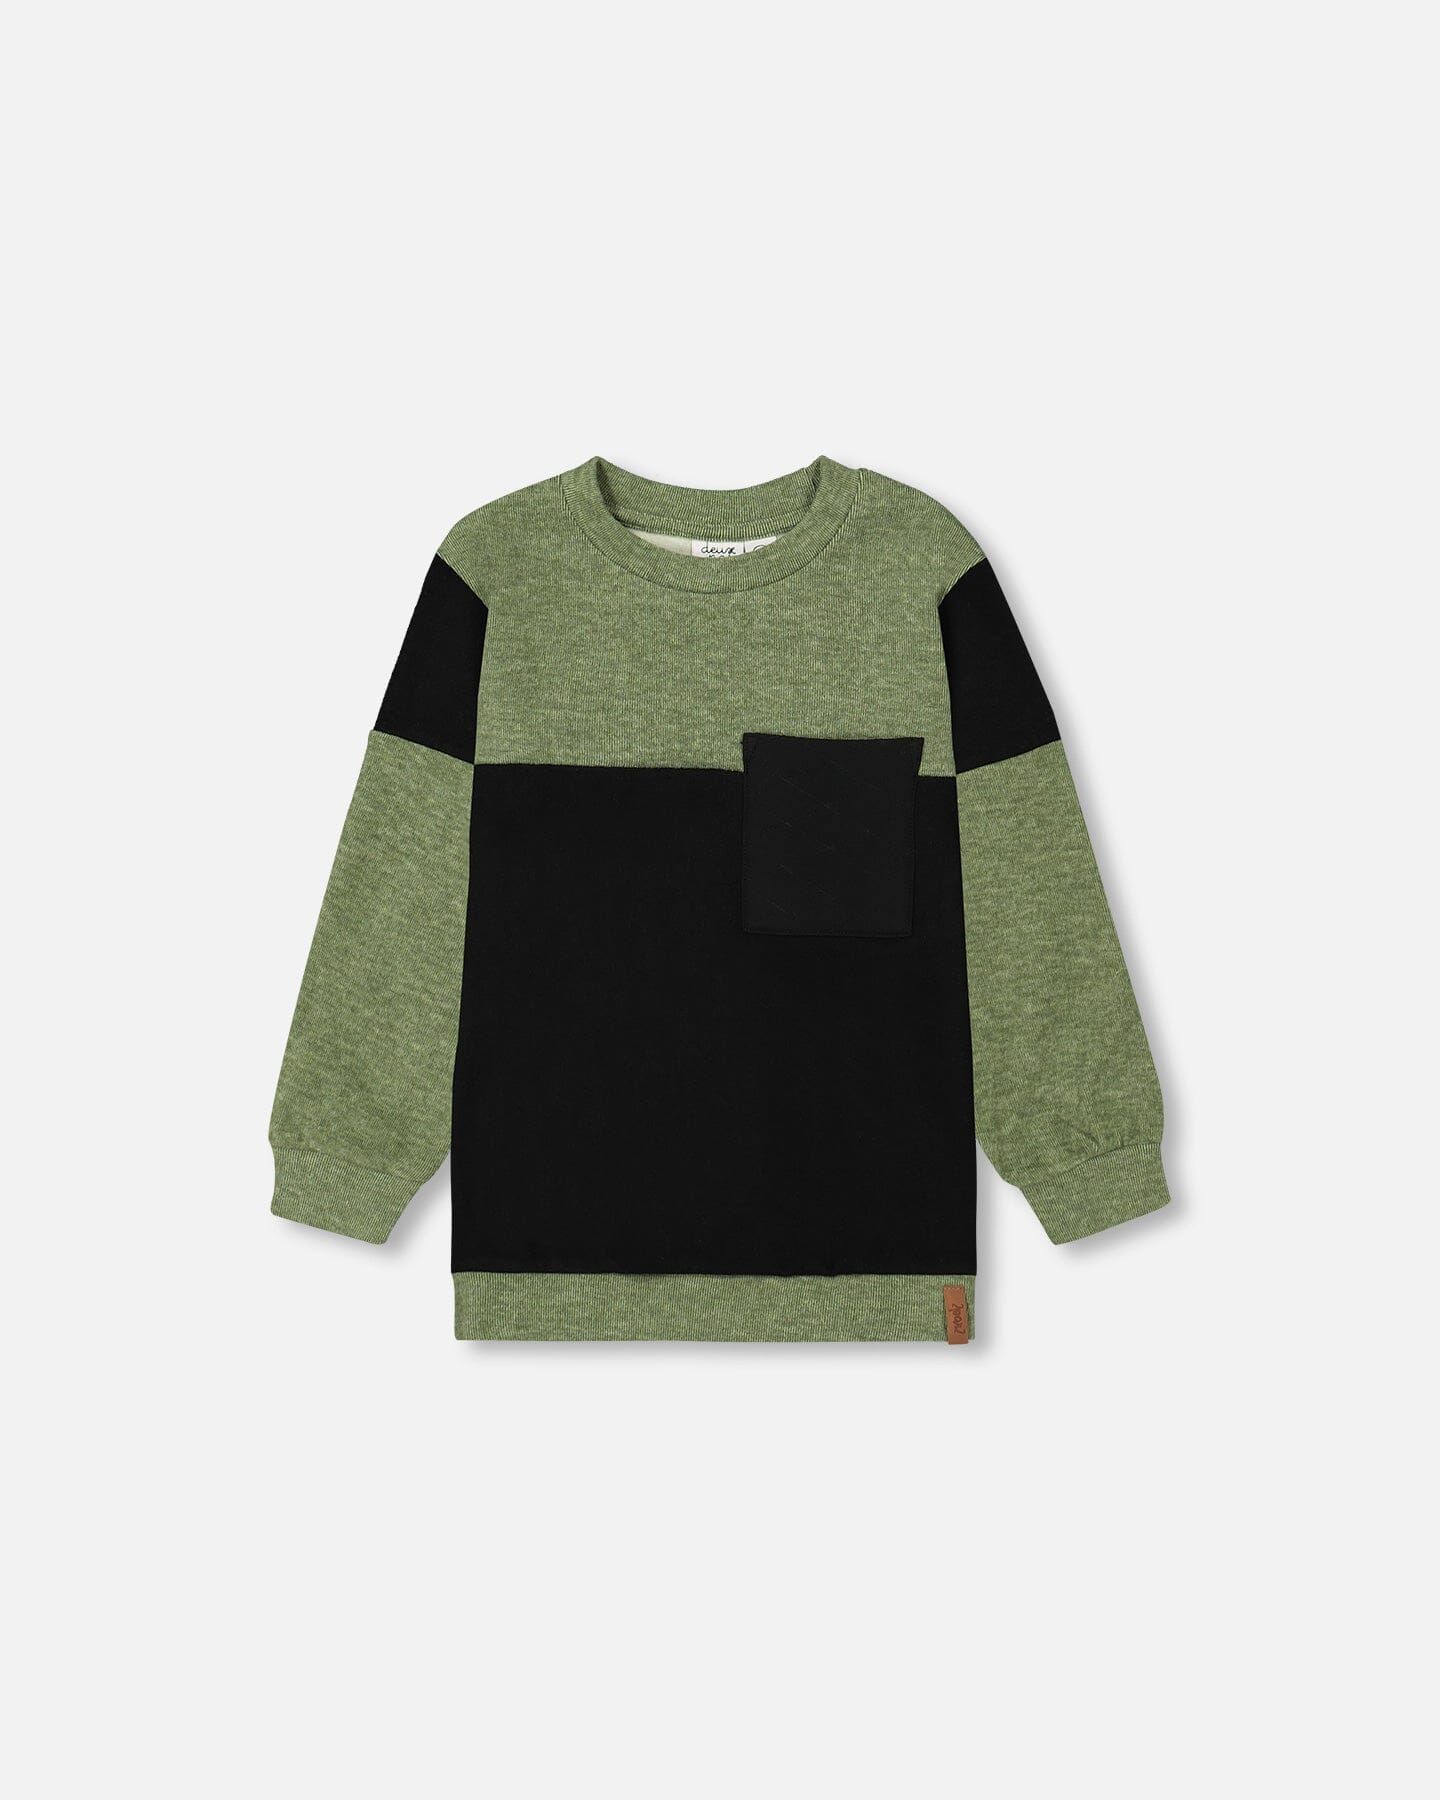 Super Soft Brushed Rib Top Black And Ivy Green | Deux par Deux Childrens Designer Clothing